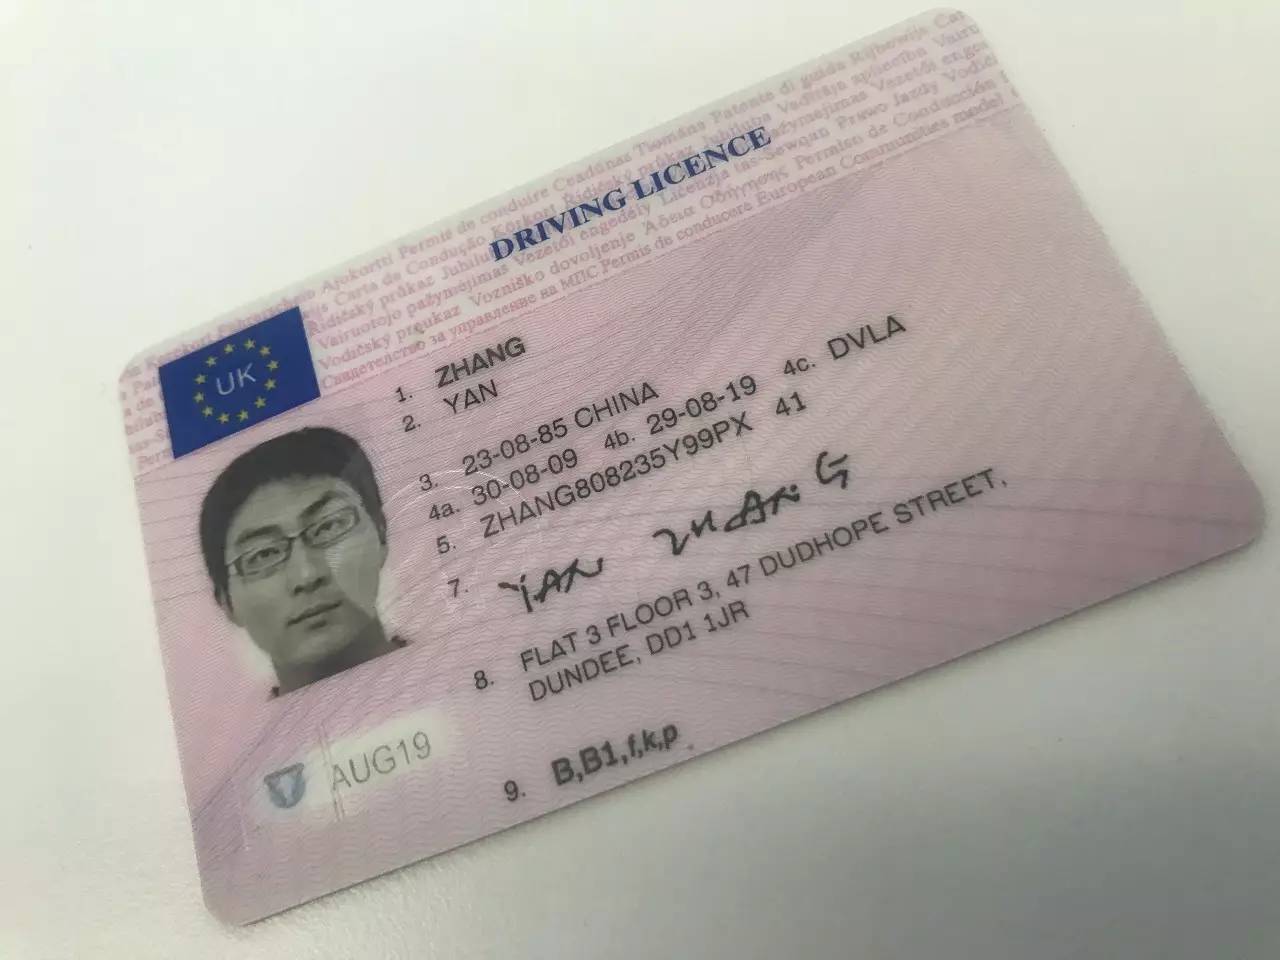 英国驾照也是一个很管用的身份证件,超市购买酒精产品只需出示驾照